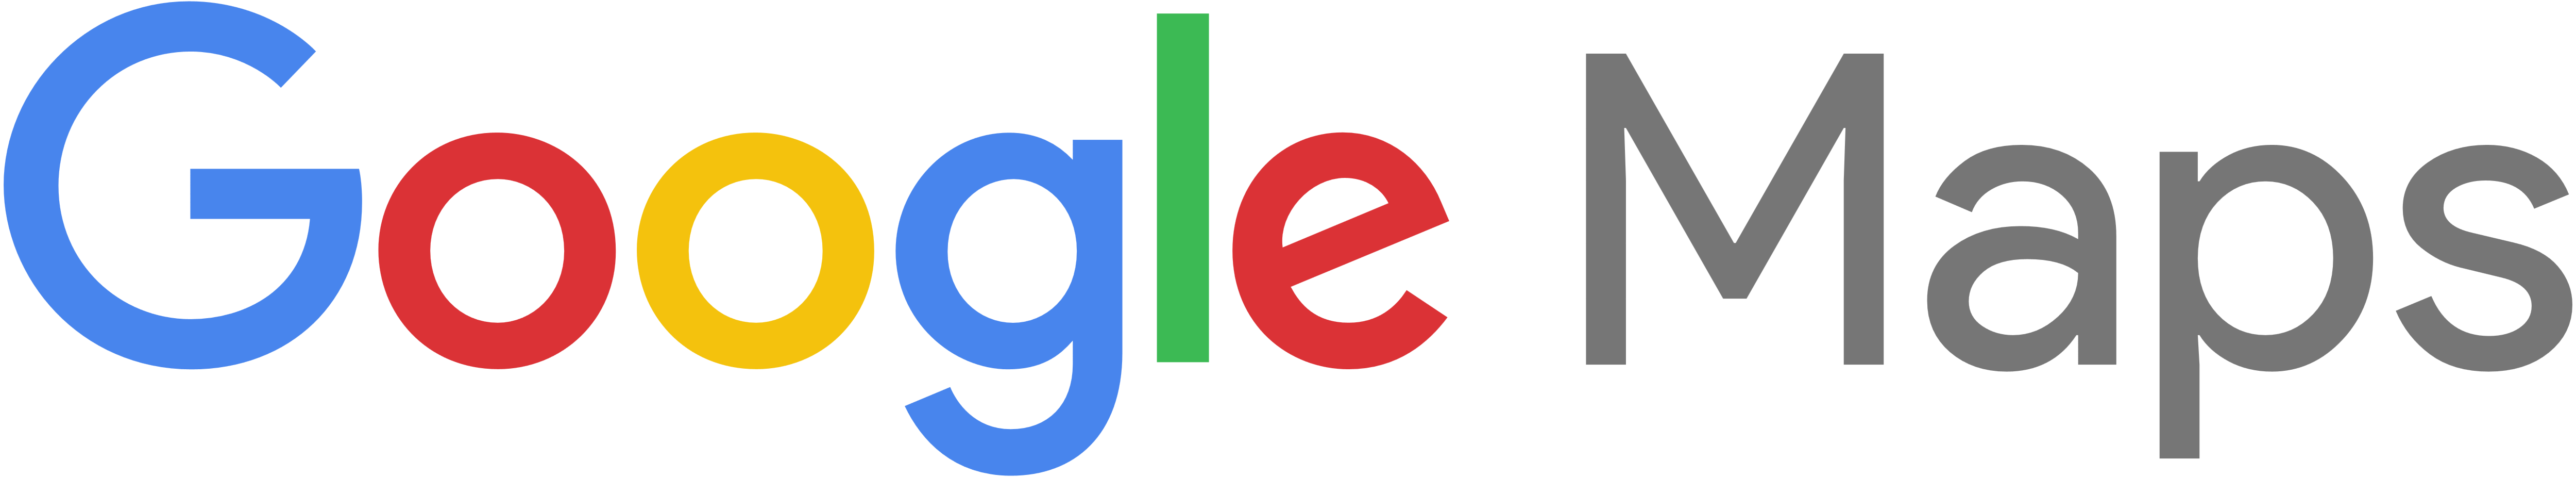 Google Maps – Logos Download